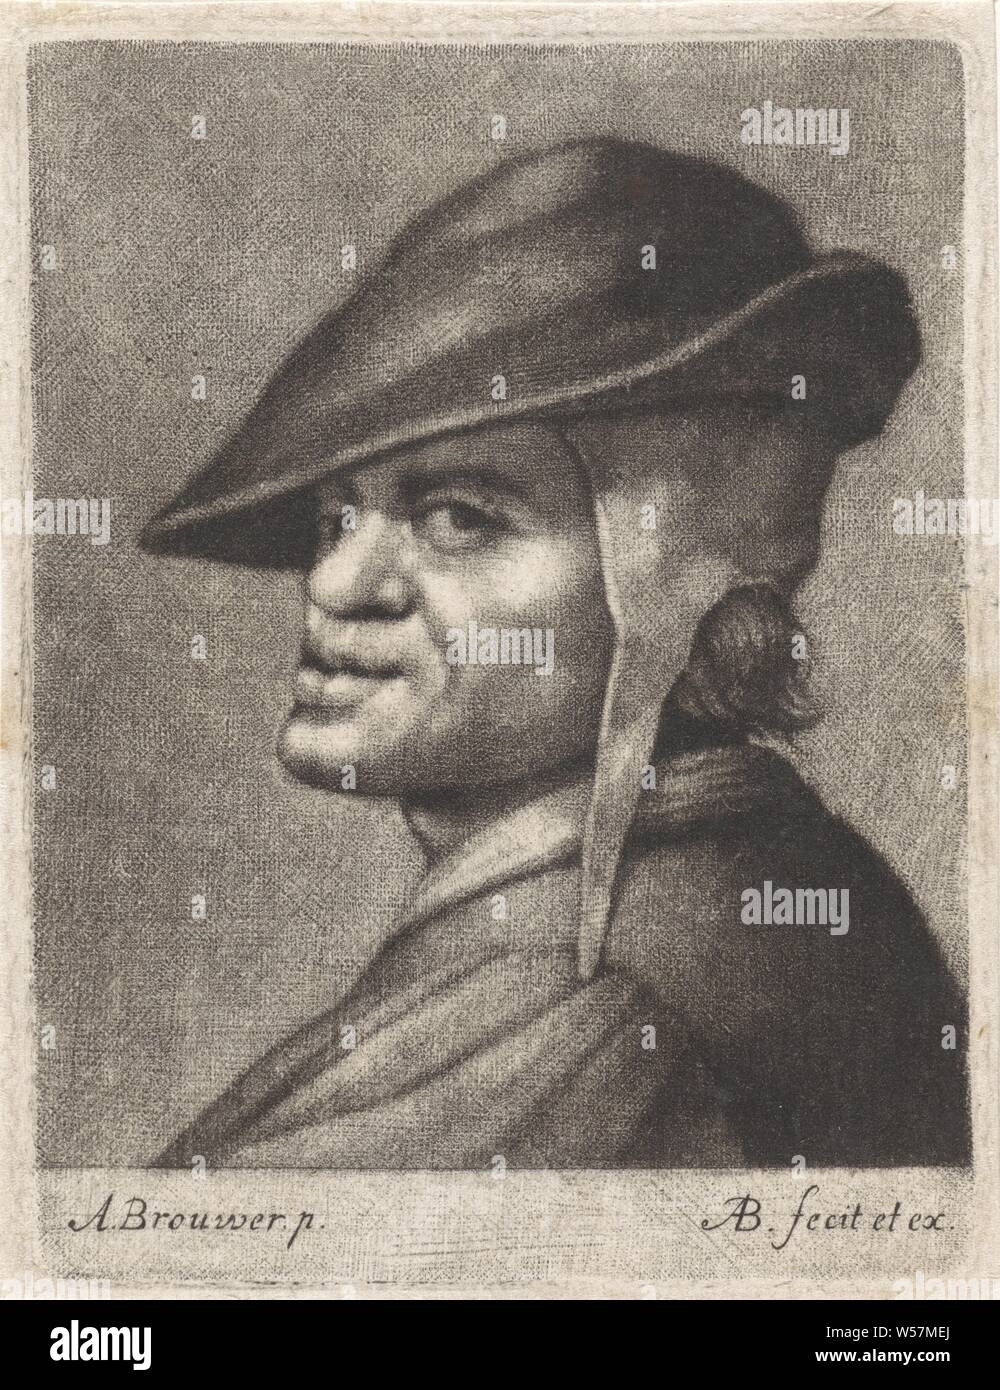 Mann mit dem Filzhut, Kopfbedeckung: Cap (Herren Kleidung), Abraham Bloteling (auf Objekt erwähnt), Amsterdam, 1652 - 1690, Papier, H 105 mm x B 79 mm Stockfoto